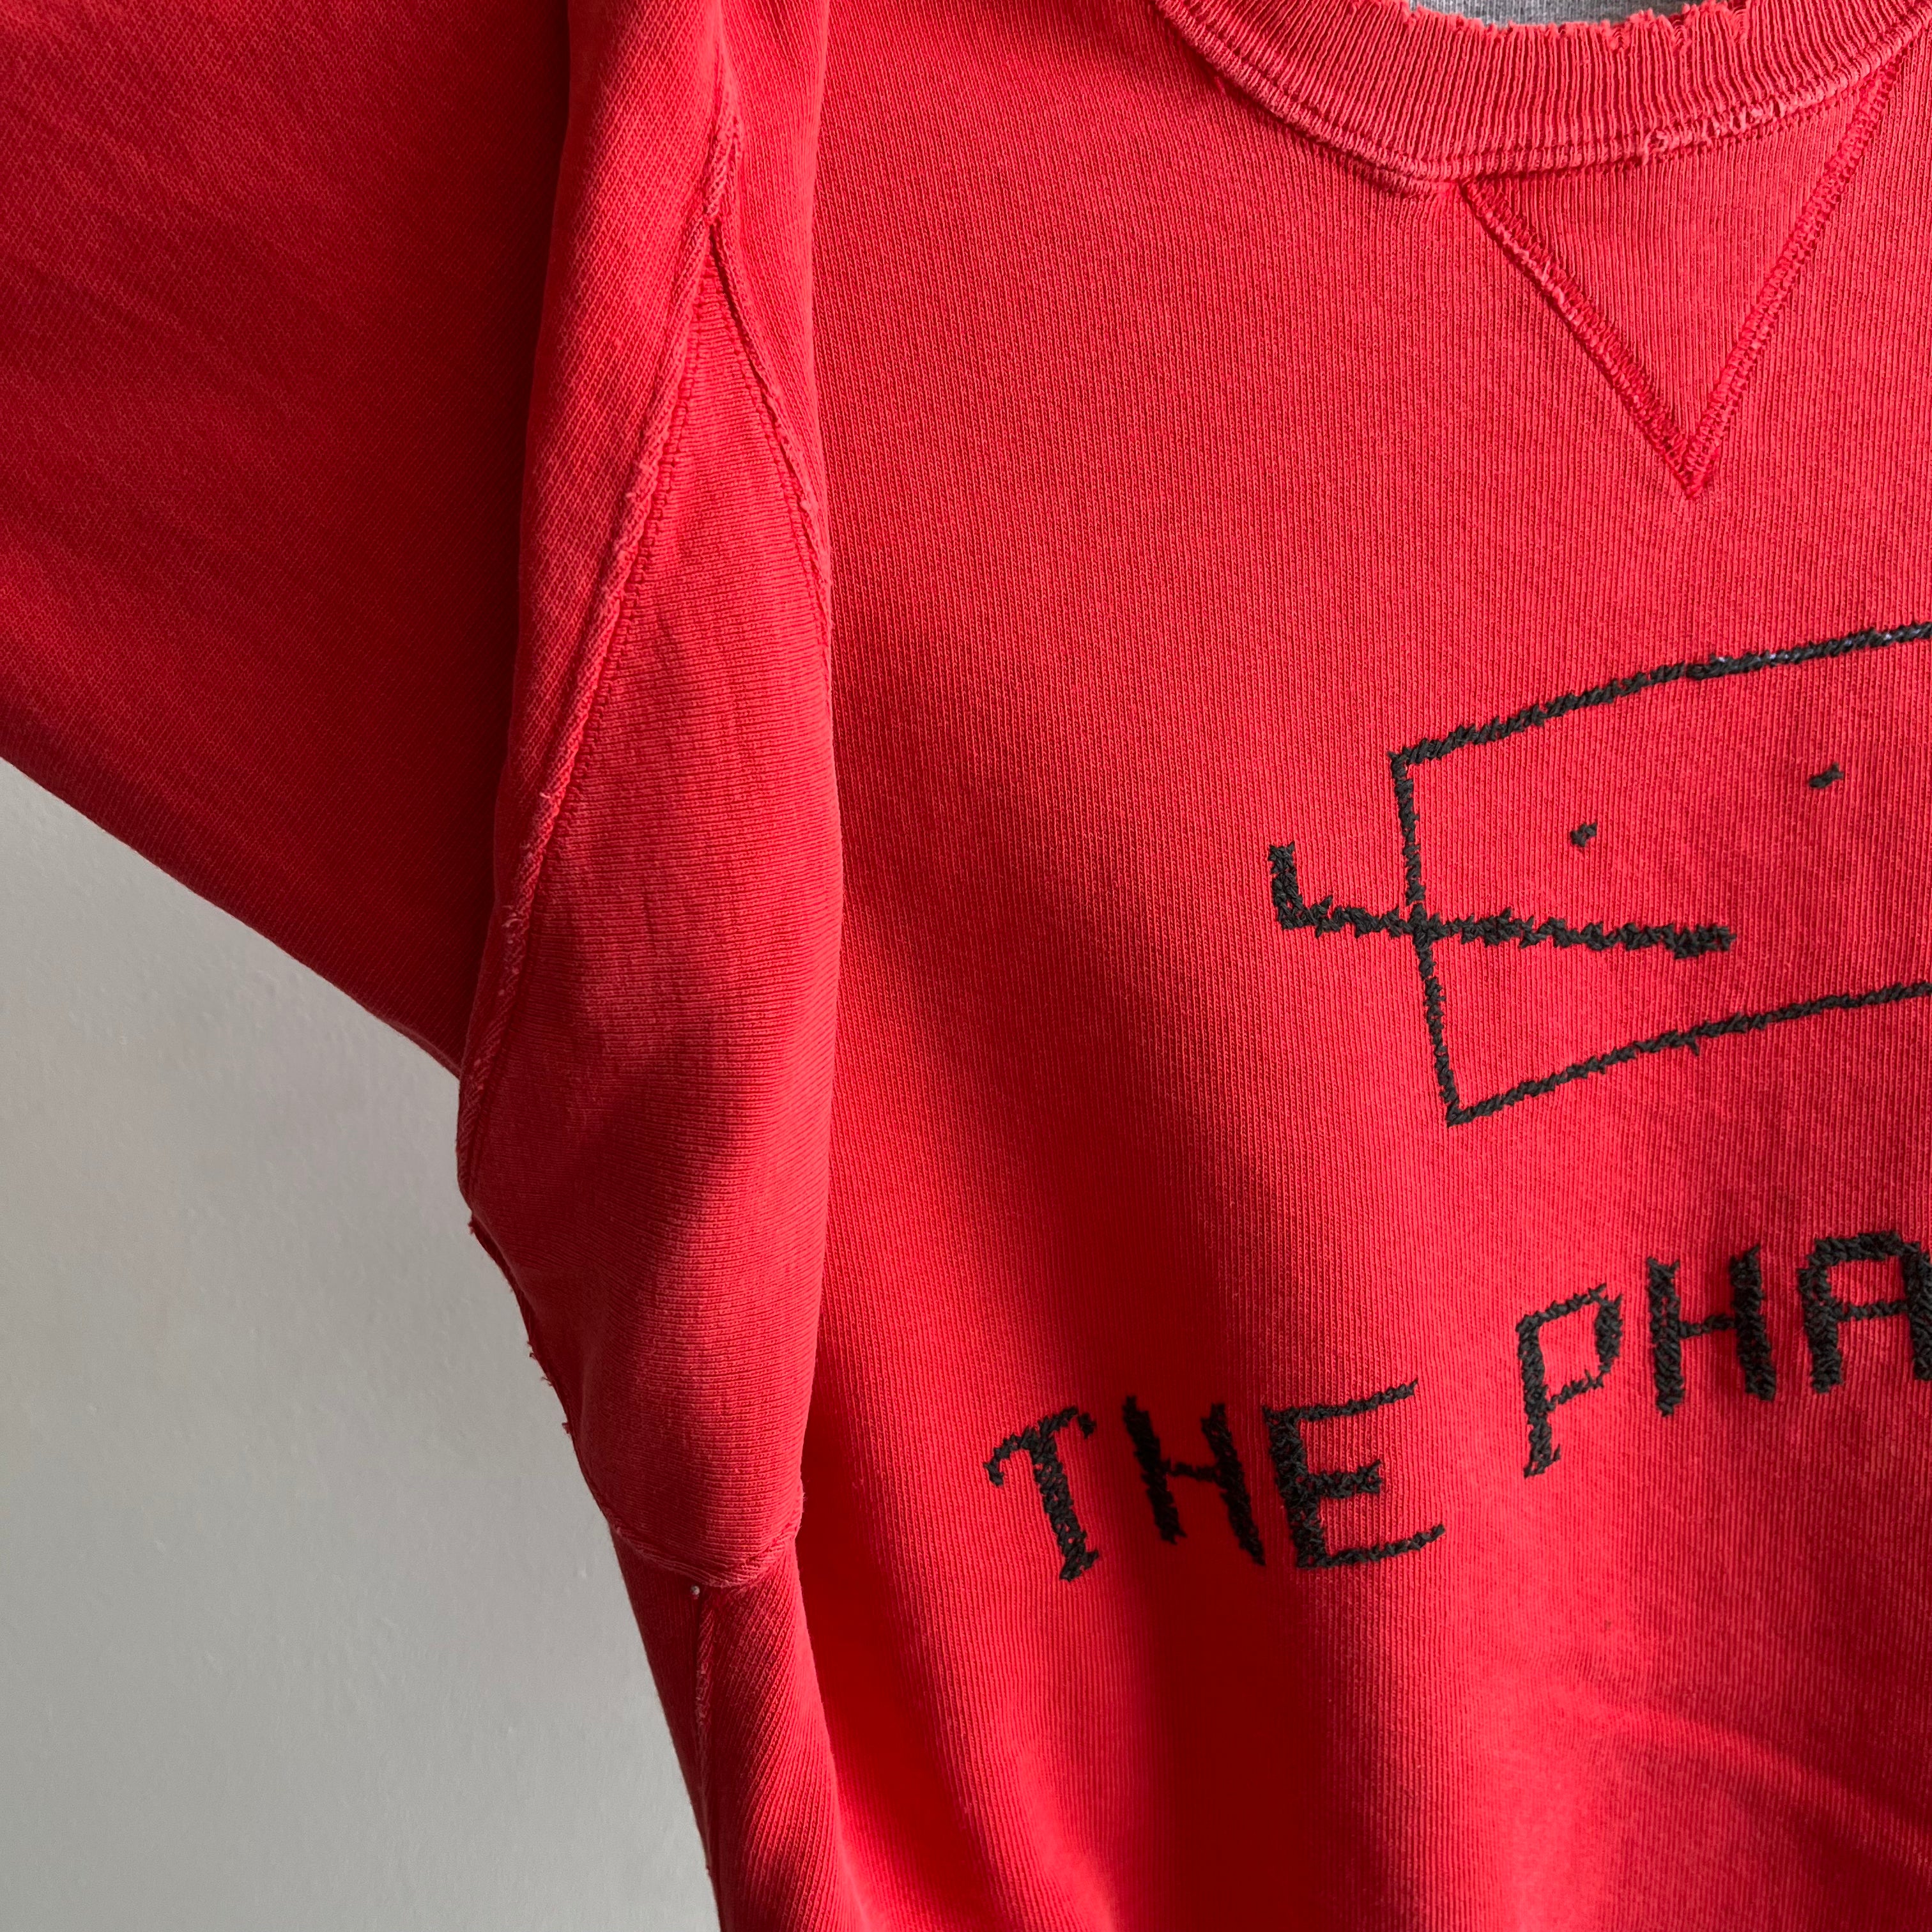 Sweat-shirt taché et usé DIY « The Phantom » des années 1990